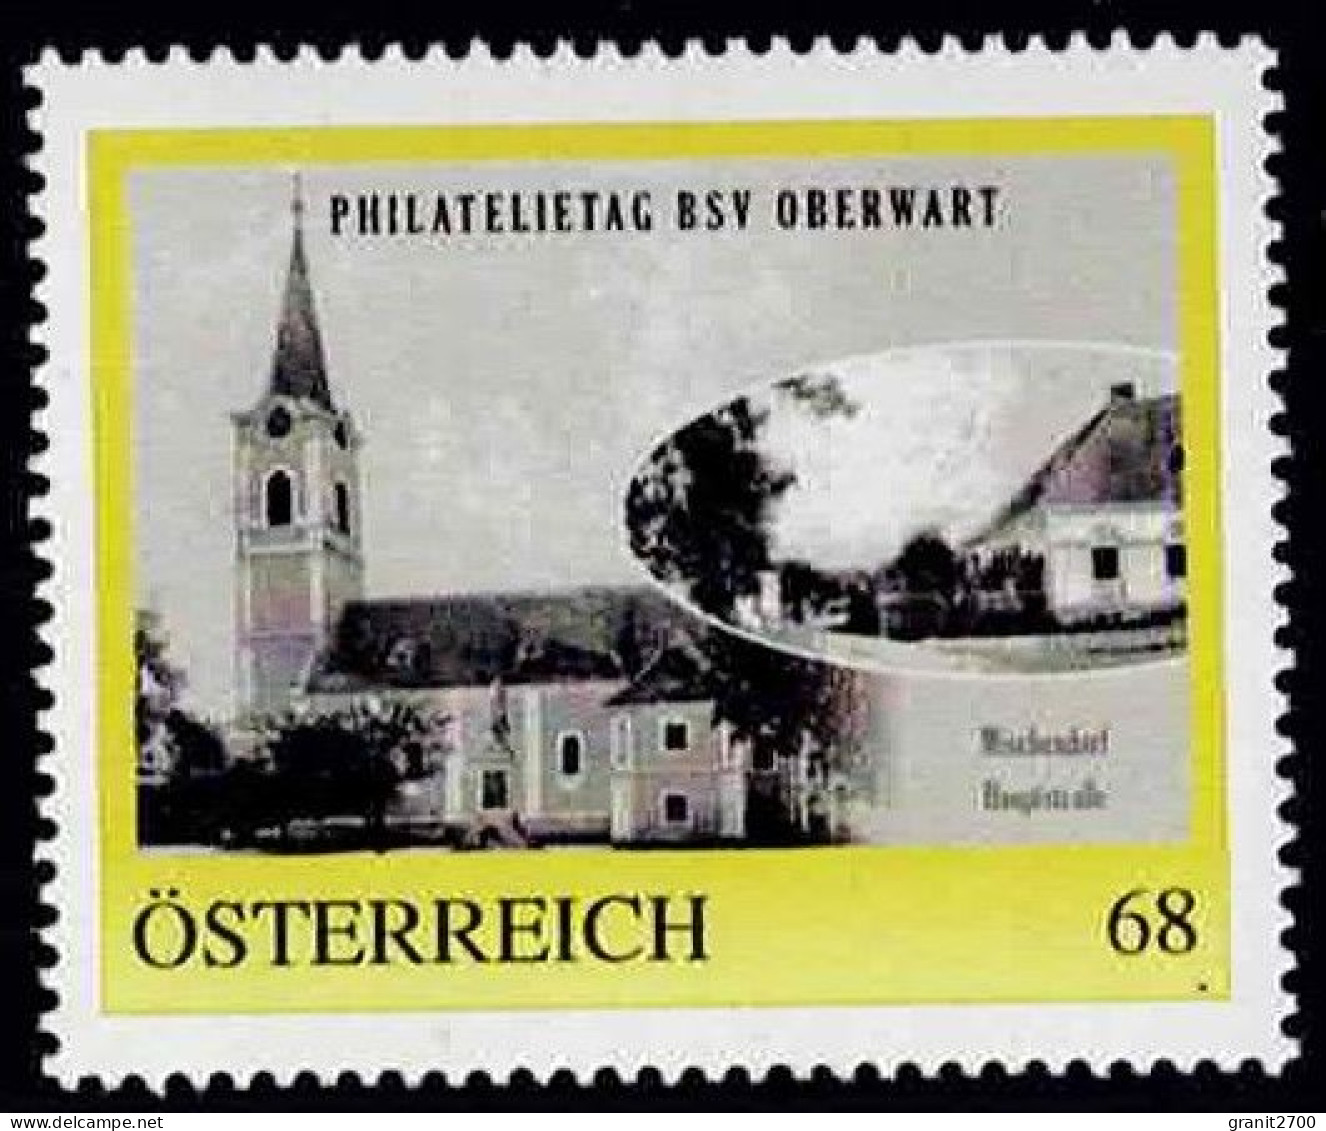 PM  Philatelietag  Oberwart - Mischendorf   Ex Bogen Nr. 8122728 Vom 18.6.2017  Postfrisch - Sellos Privados